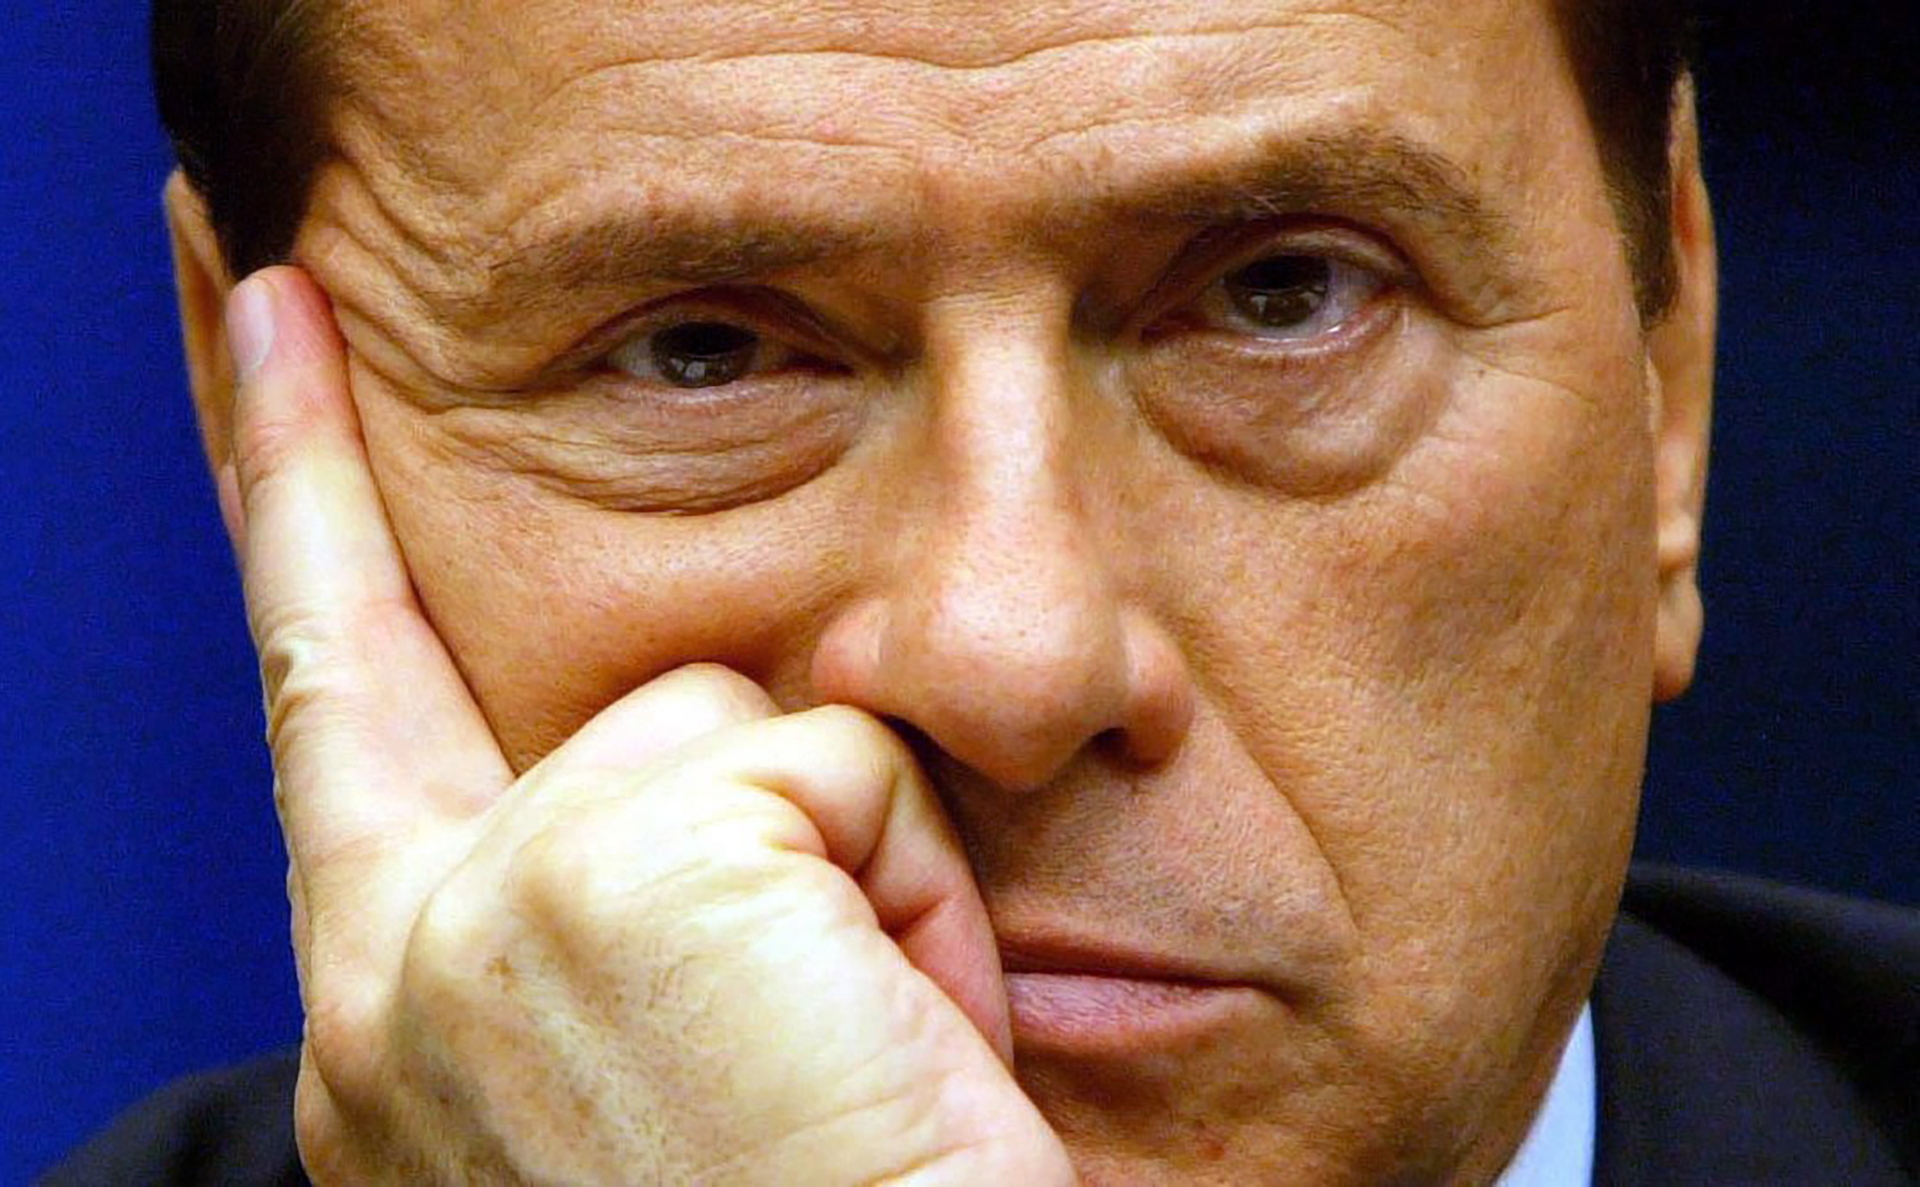 Hijos de Silvio Berlusconi aceptan reparto de su herencia millonaria